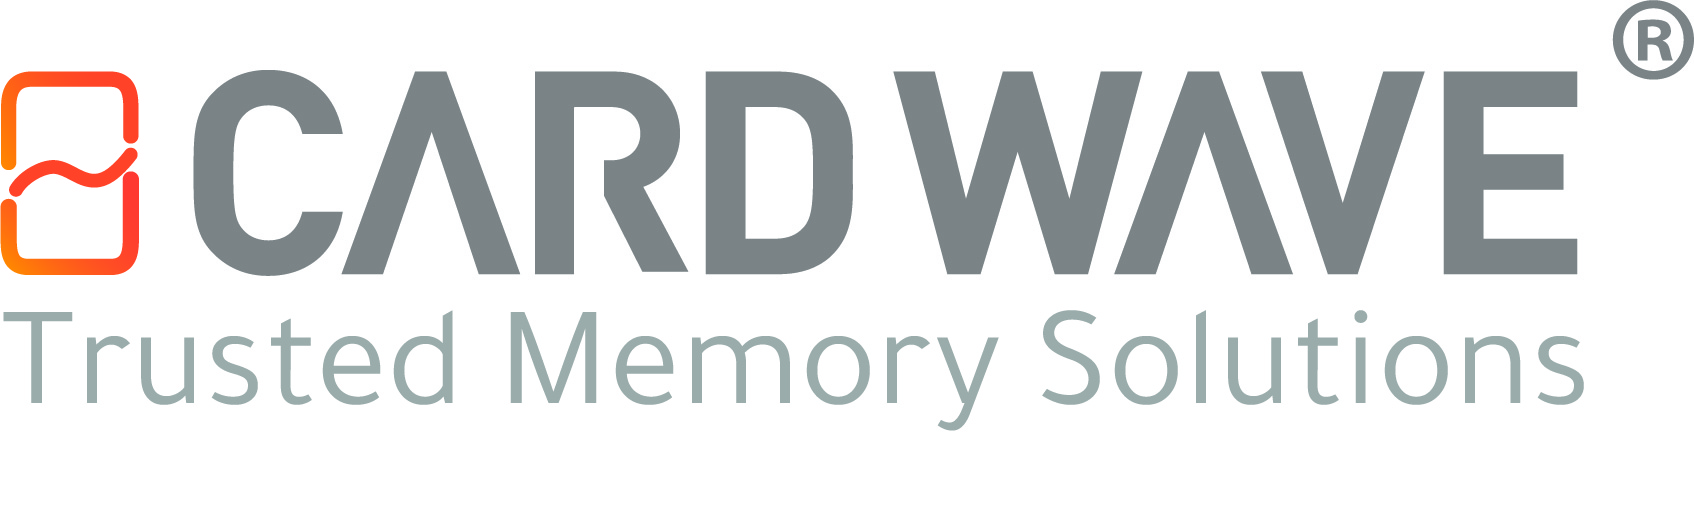 logo for Cardwave Services Ltd